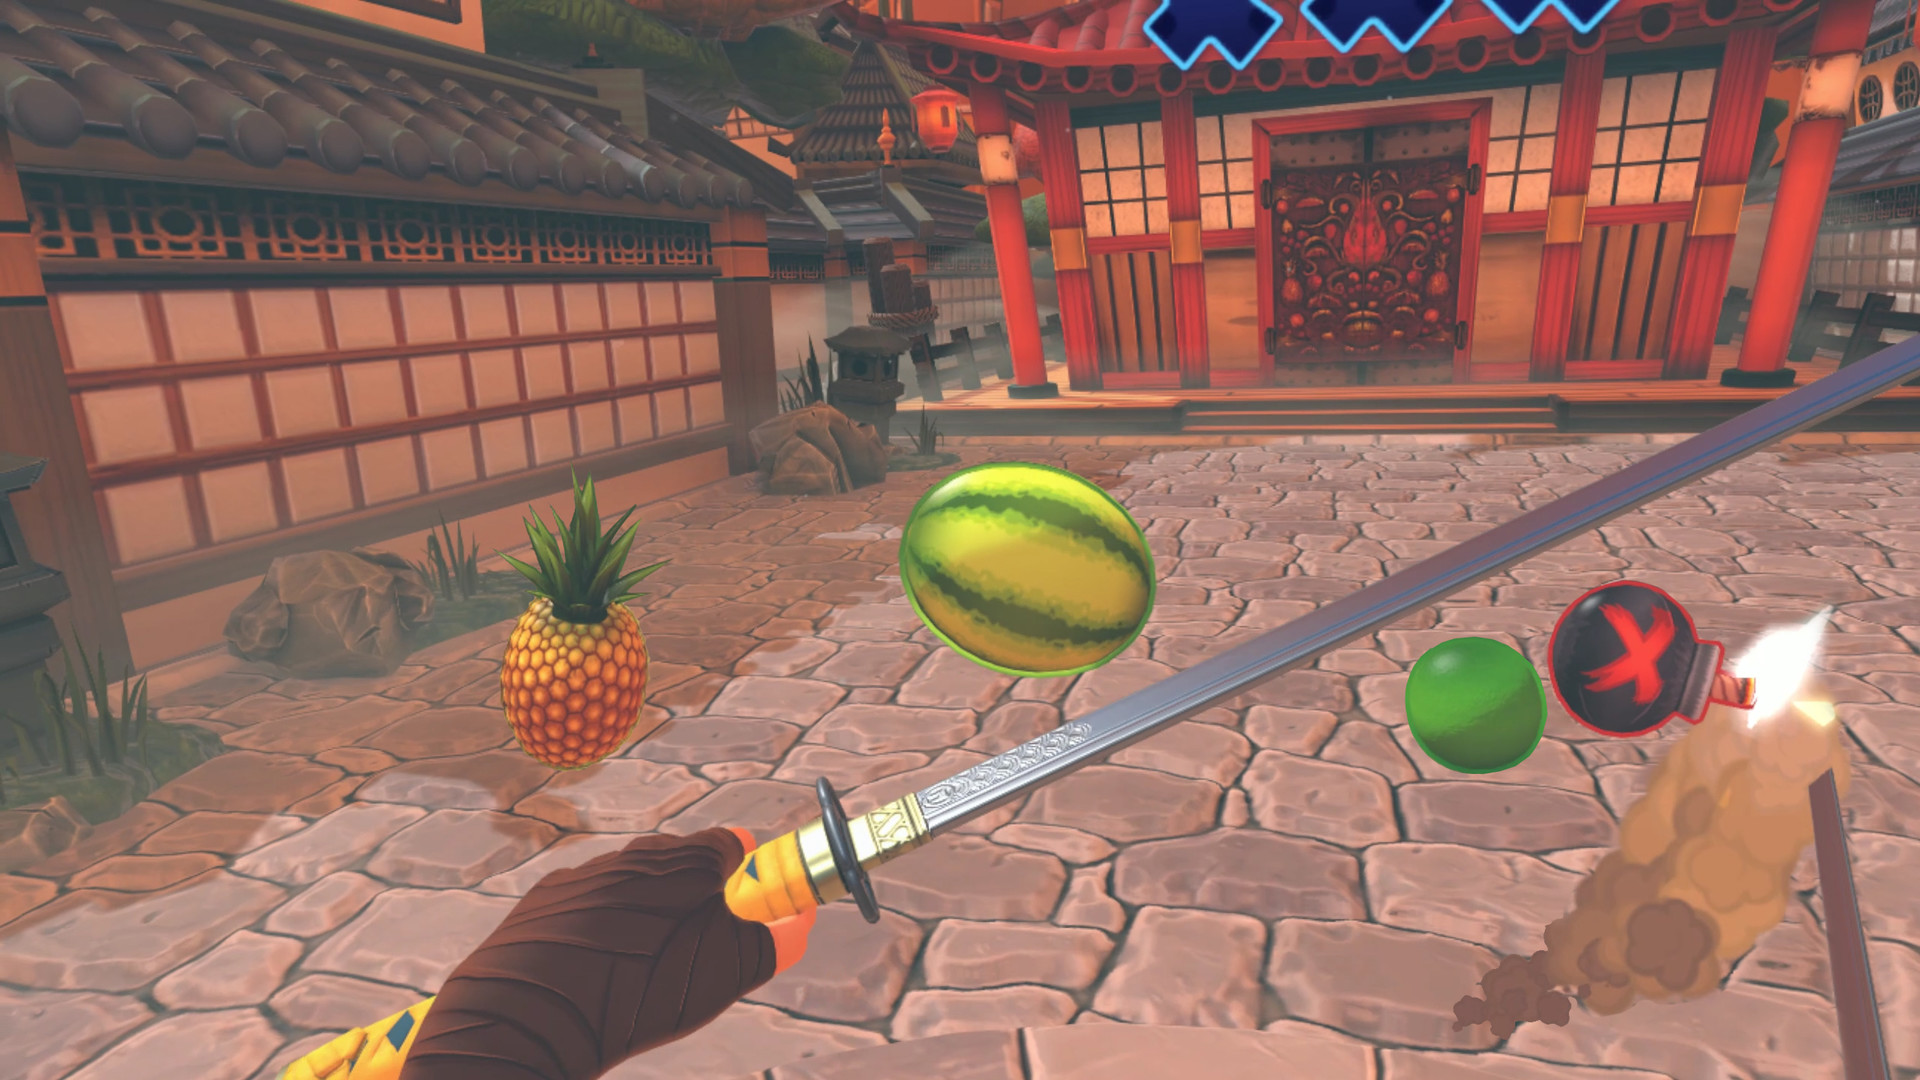 Fruit Ninja 2 Review - The Casual App Gamer